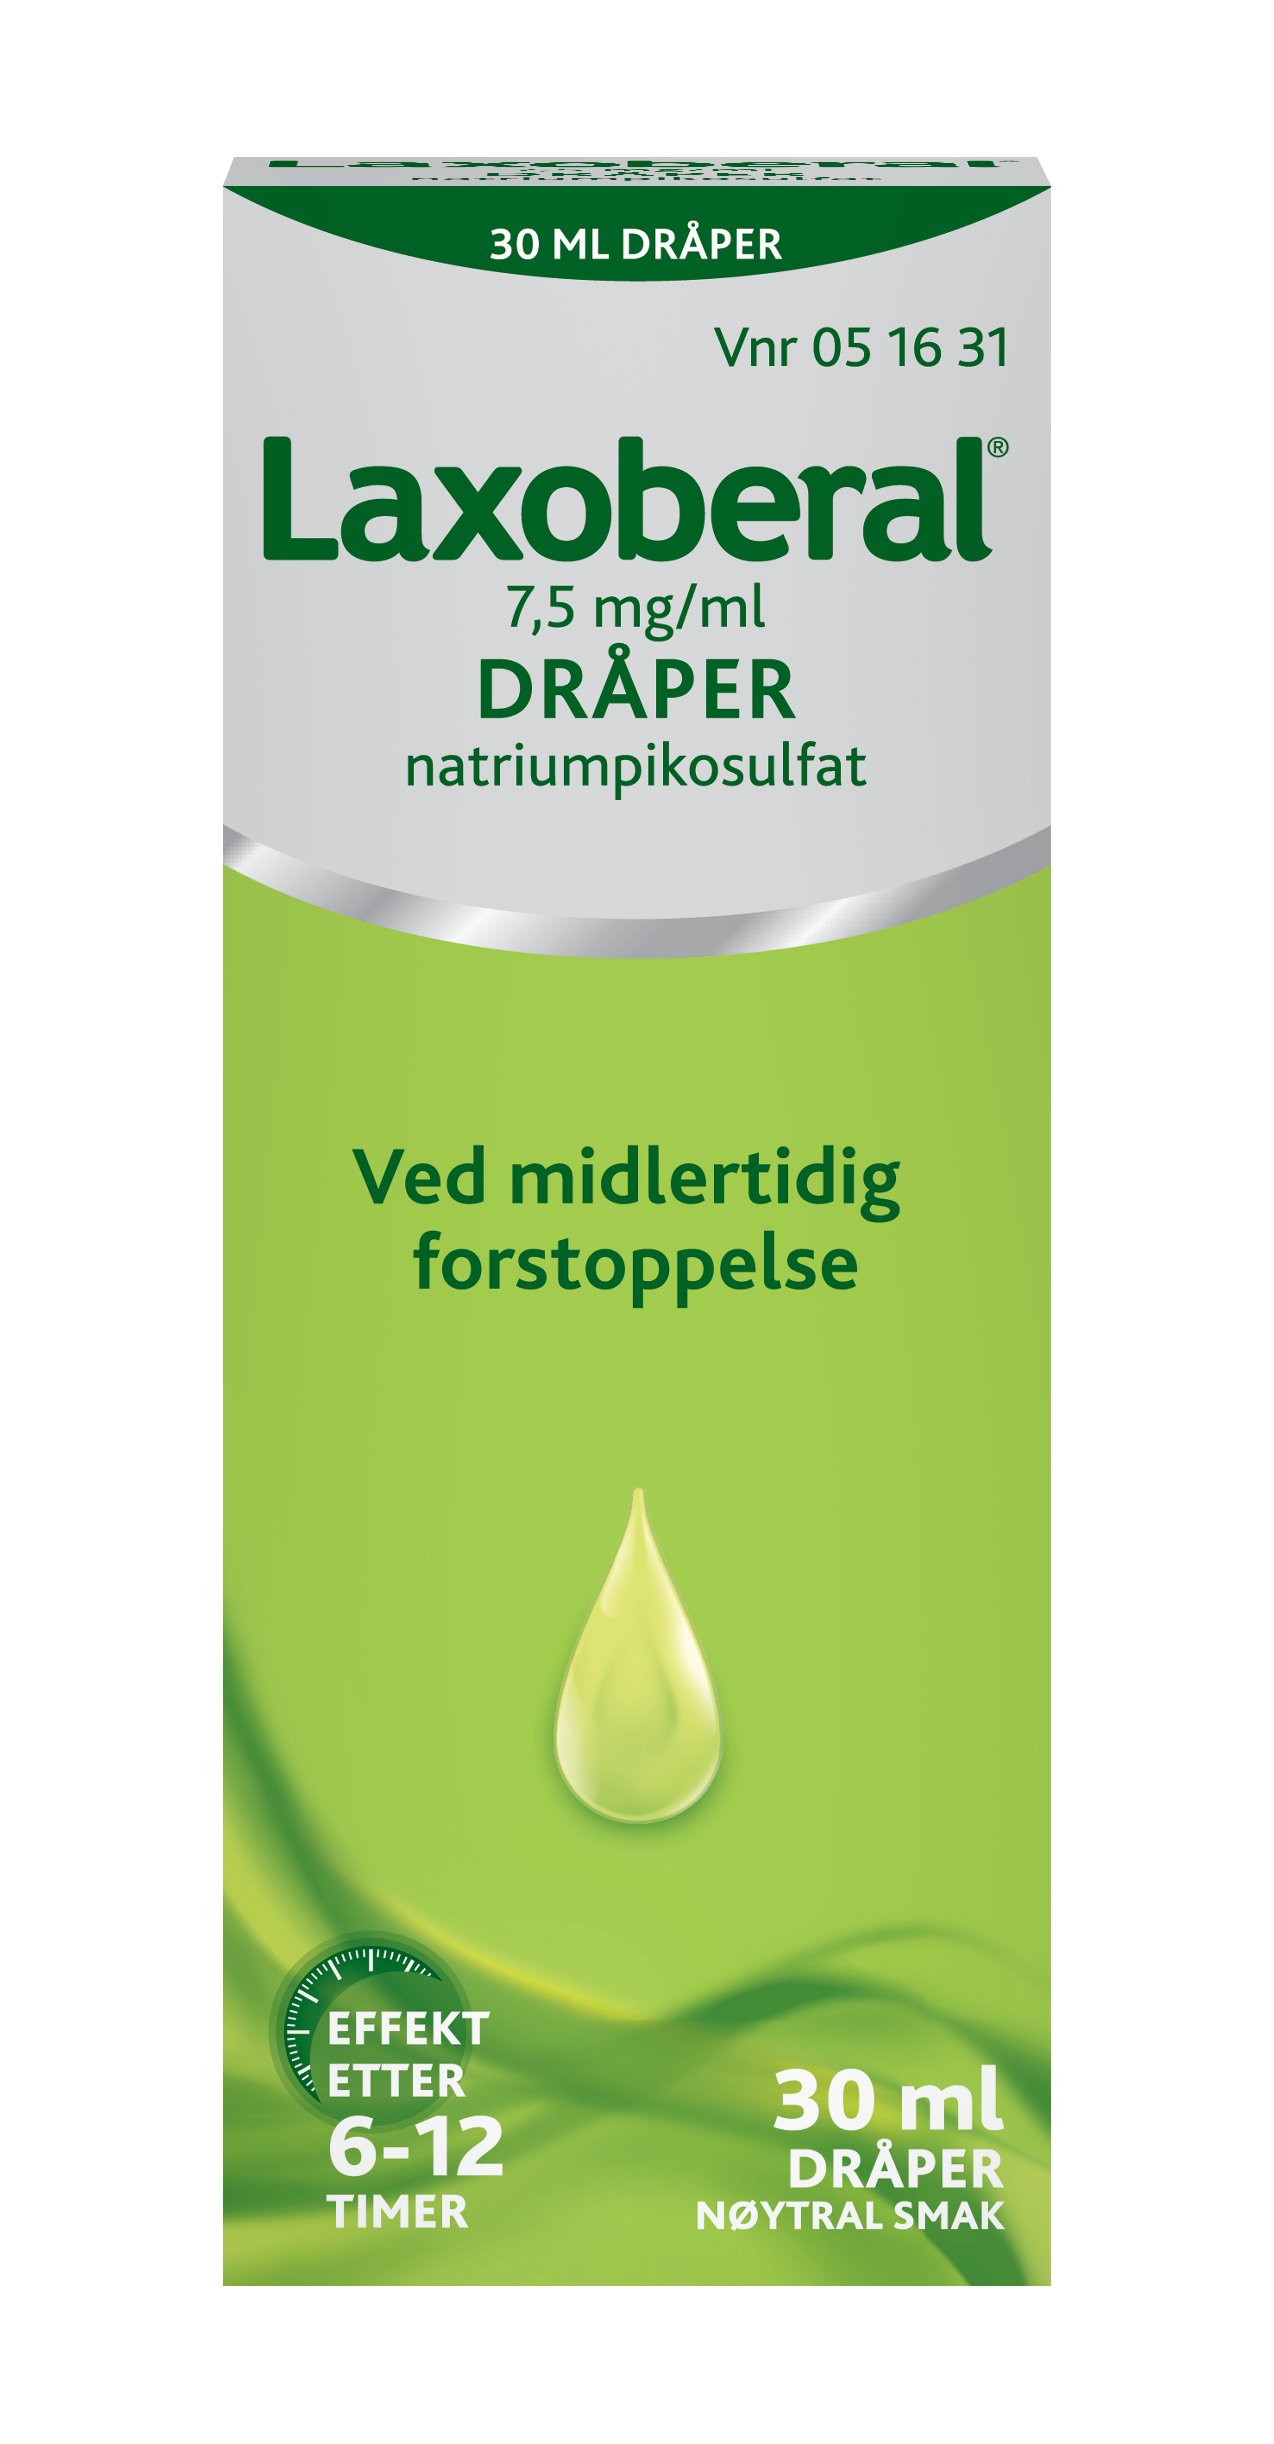 Laxoberal Dråper 7,5mg/ml, 30 ml.